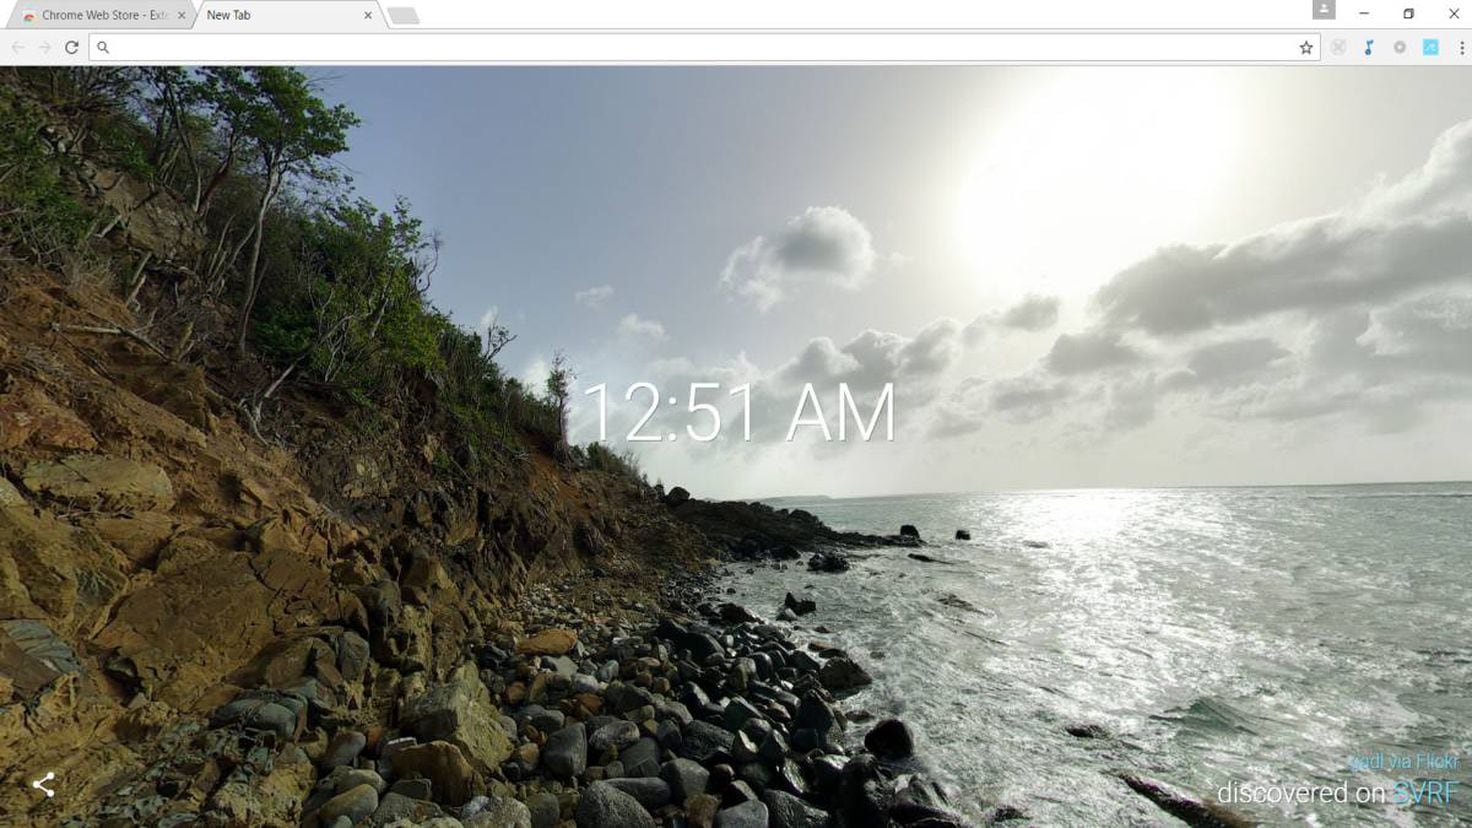 Personaliza las pestañas de Google Chrome con imágenes en 360º - Meristation